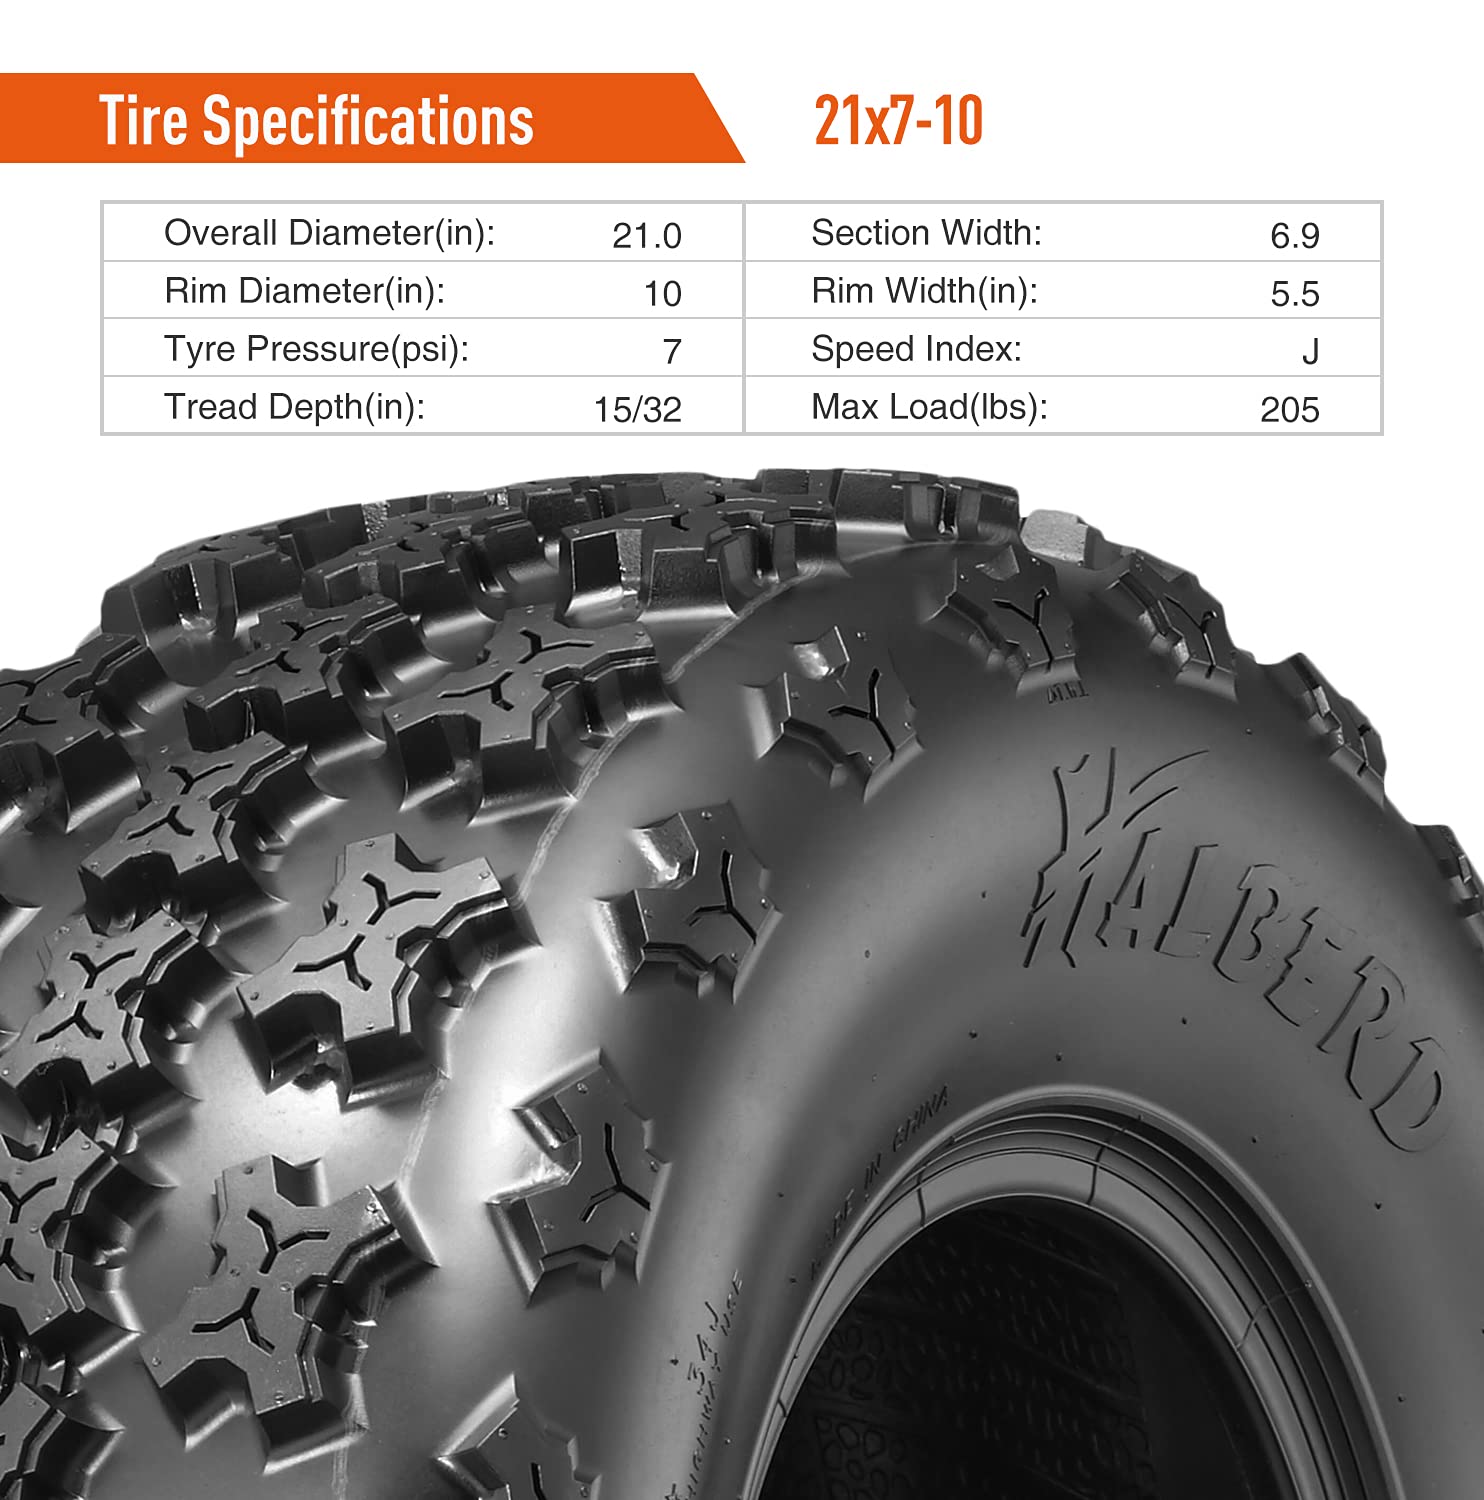 Halberd HS01 21x7-10 ATV Tires Set of 2